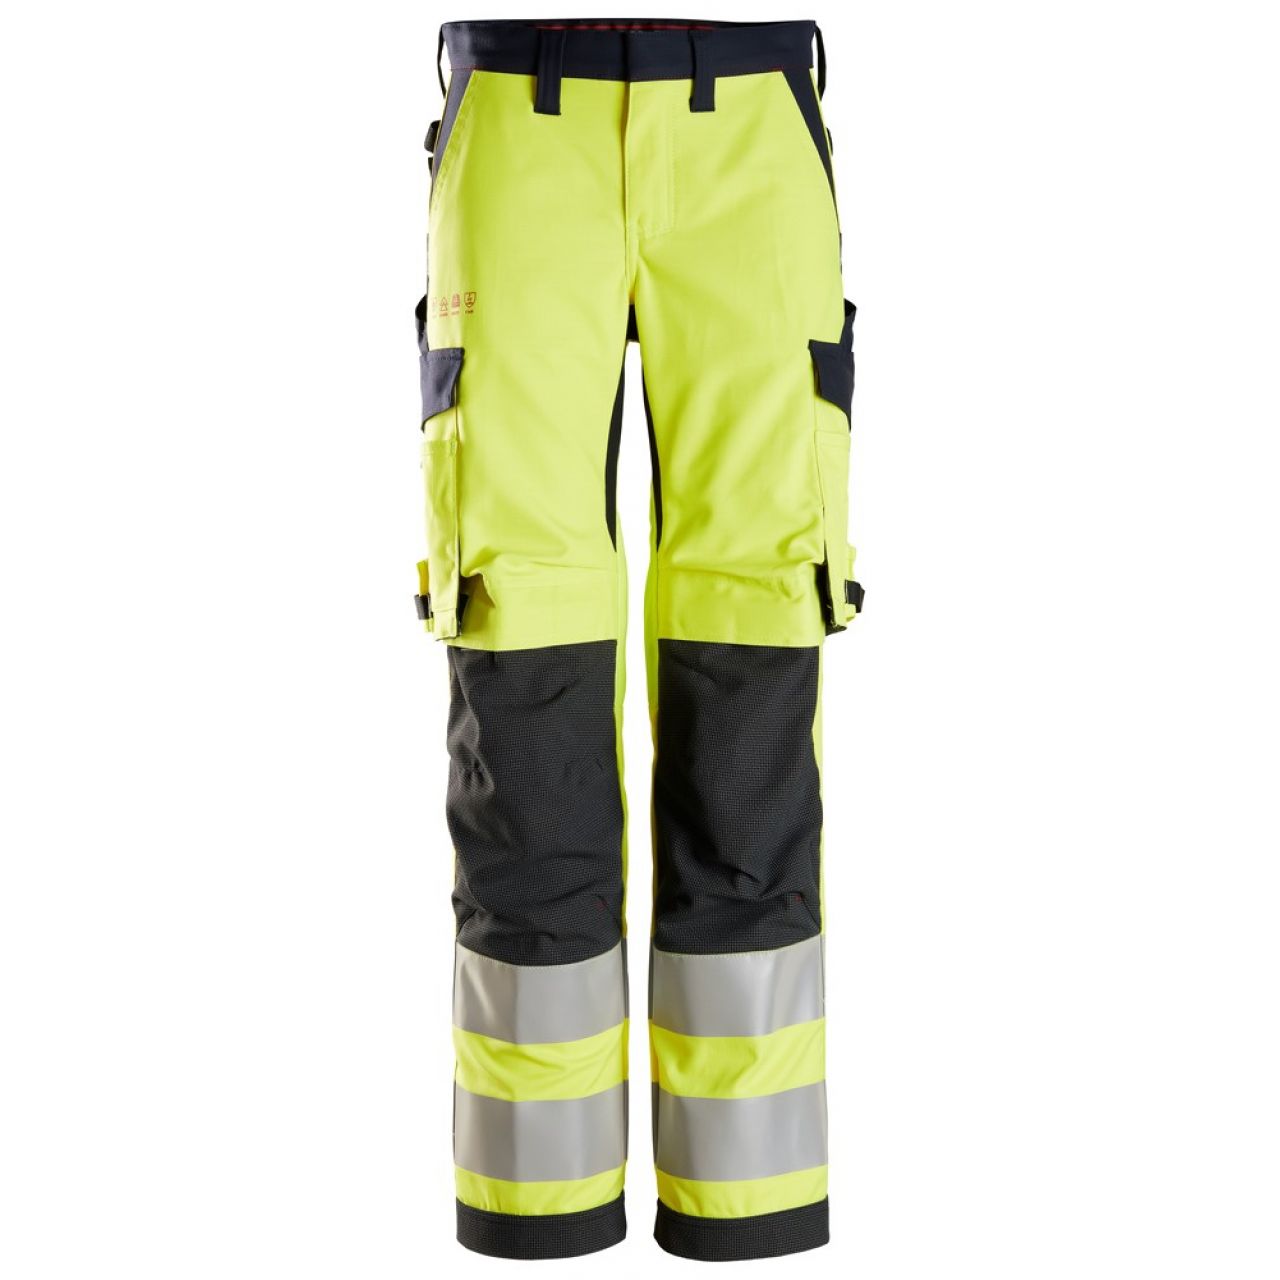 6760 Pantalones largos de trabajo de alta visibilidad clase 2 para mujer ProtecWork amarillo-azul marino talla 88